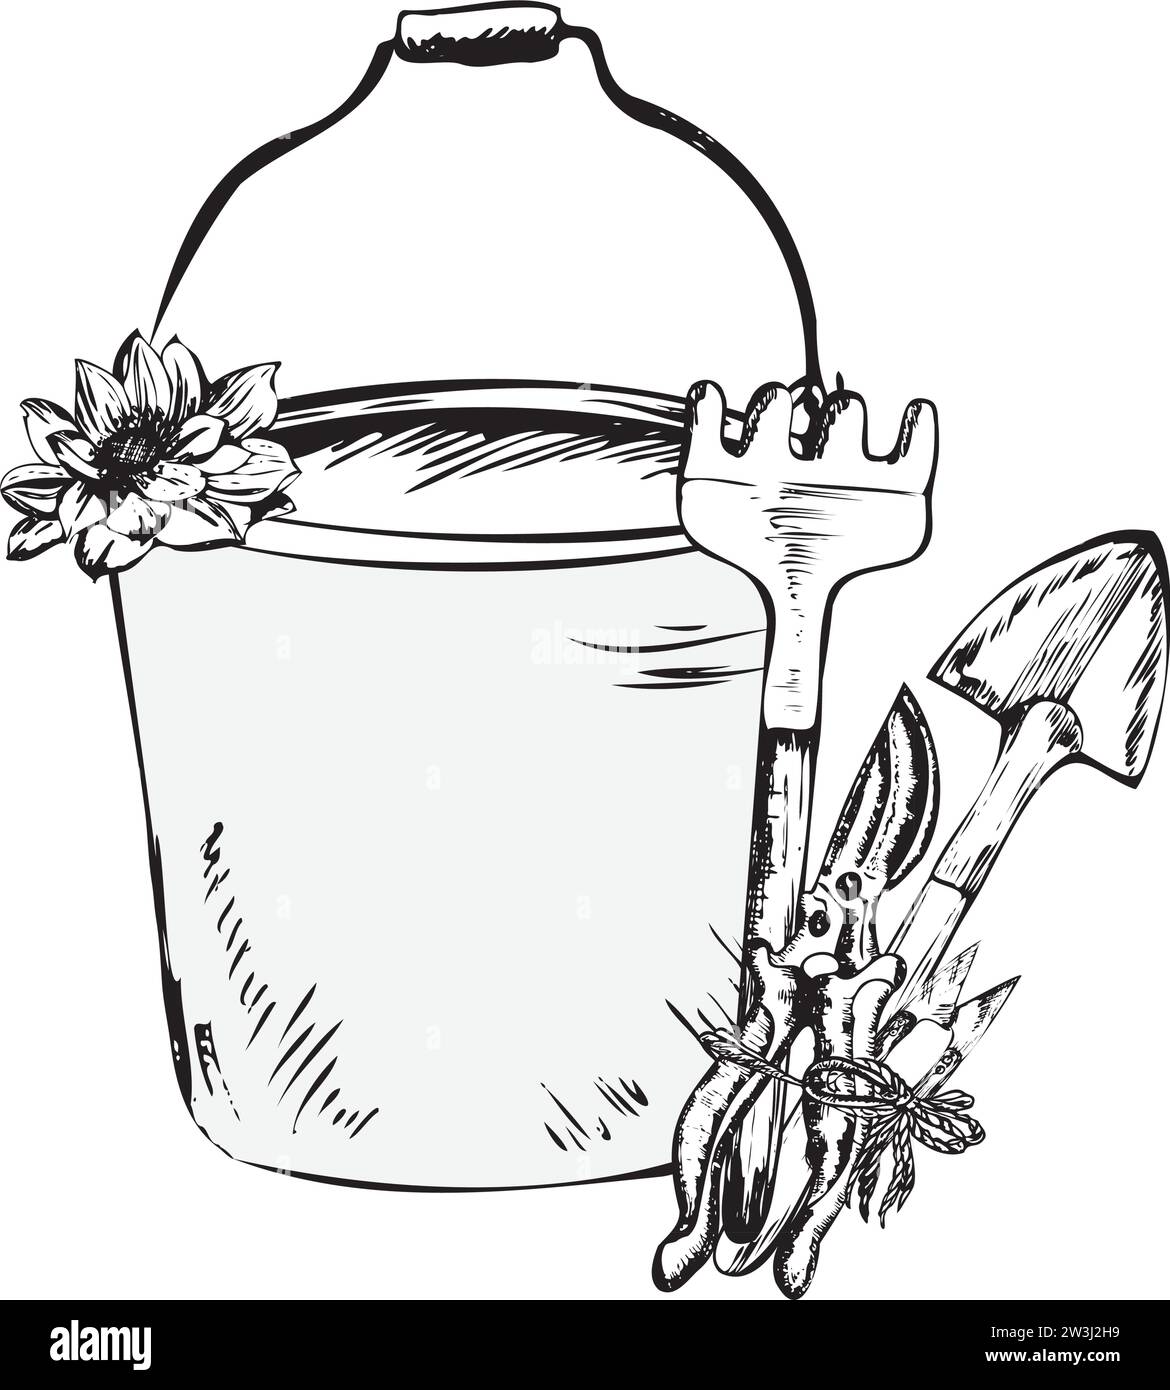 Handgezeichnete Tintendarstellung. Ein Eimer mit Gartenrechen und Kelle mit einer Blume. Vektorabbildung Stock Vektor